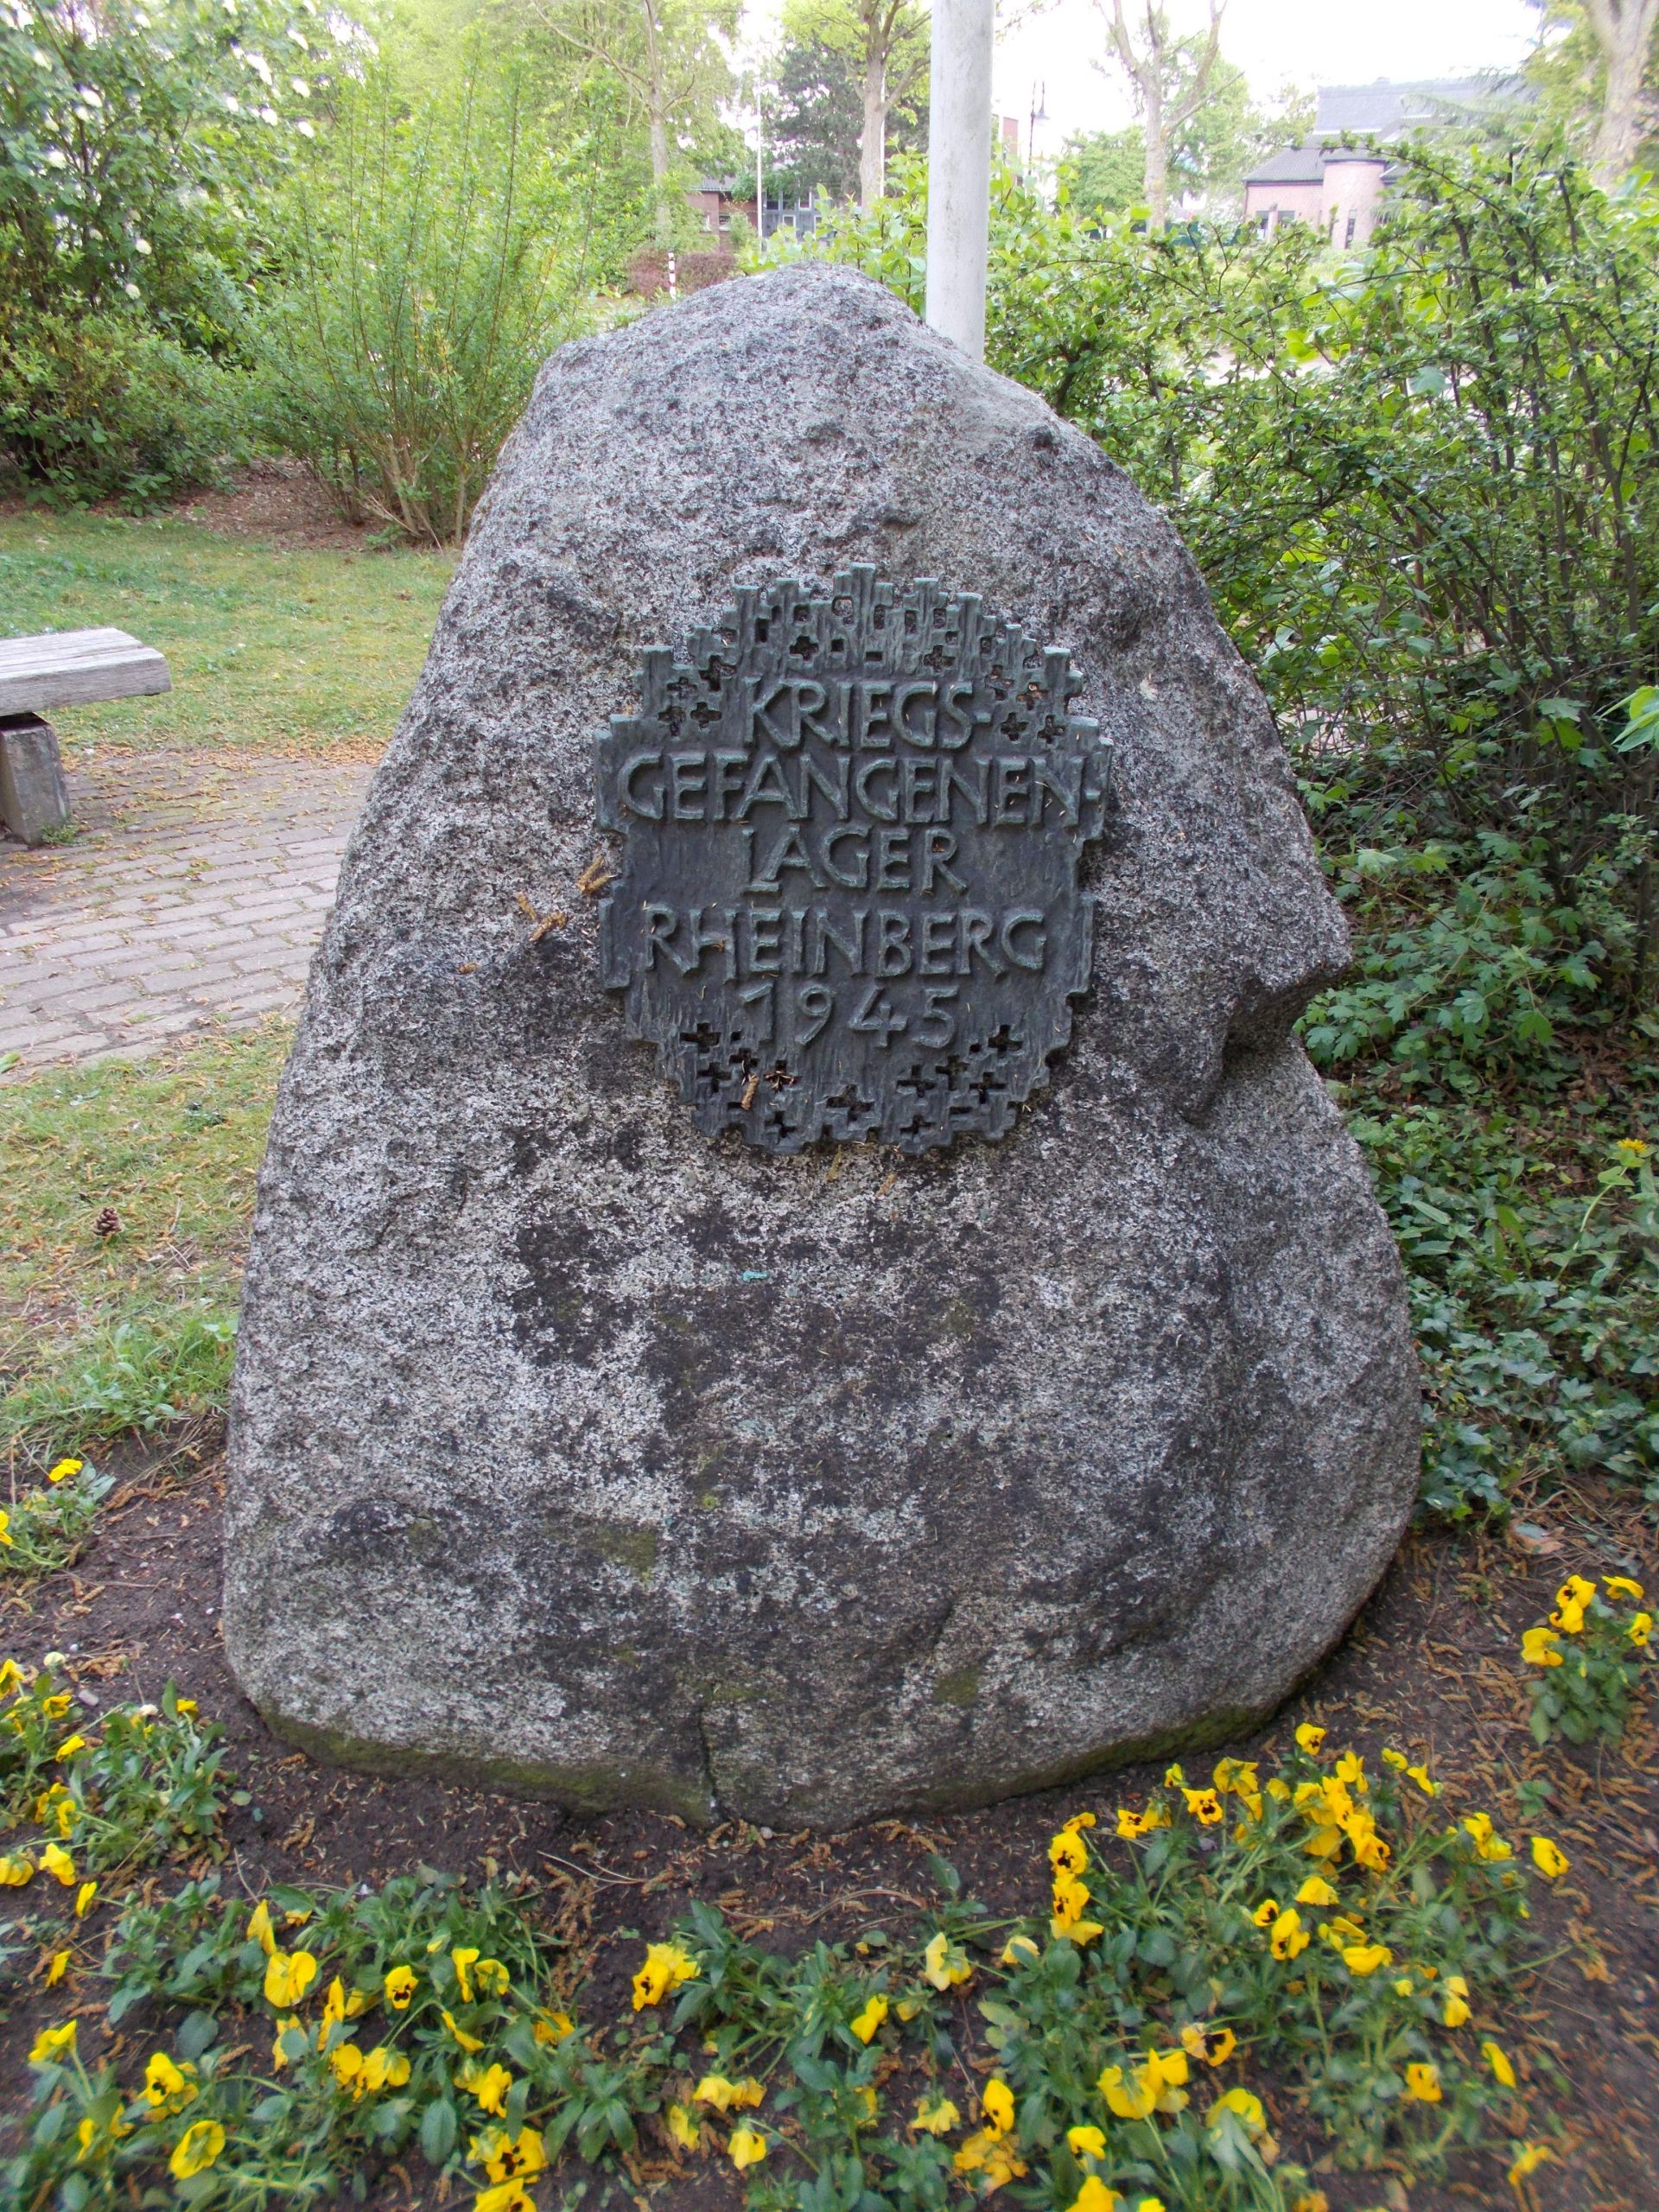 Rheinberg Rheinwiesenlager Denkmal 01